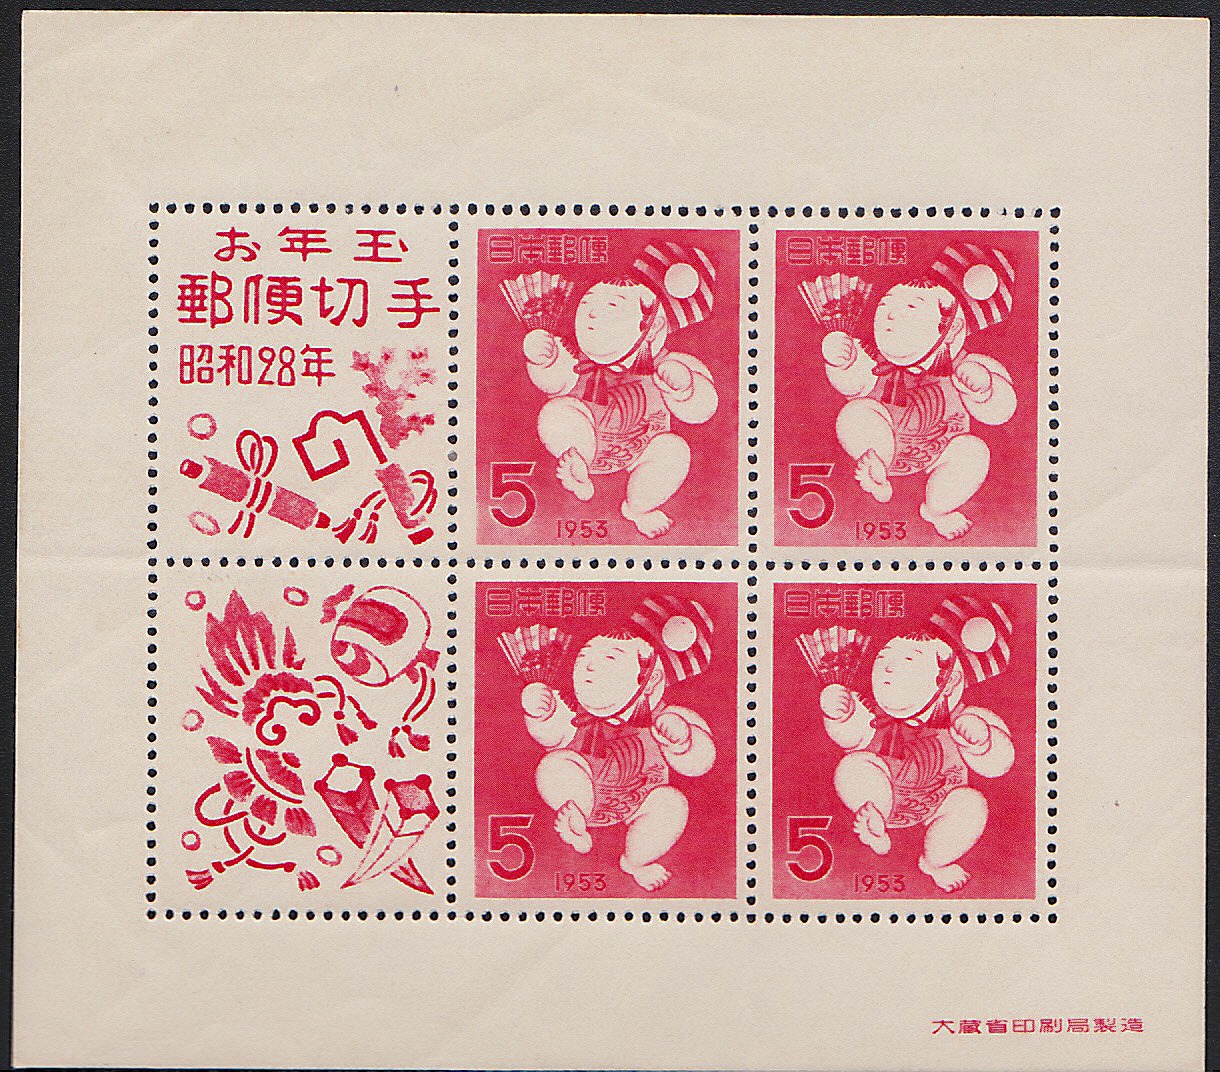 年賀　昭和28年御年玉郵便切手　　(裏に紙の貼り付きと薄紙剥がれあり)